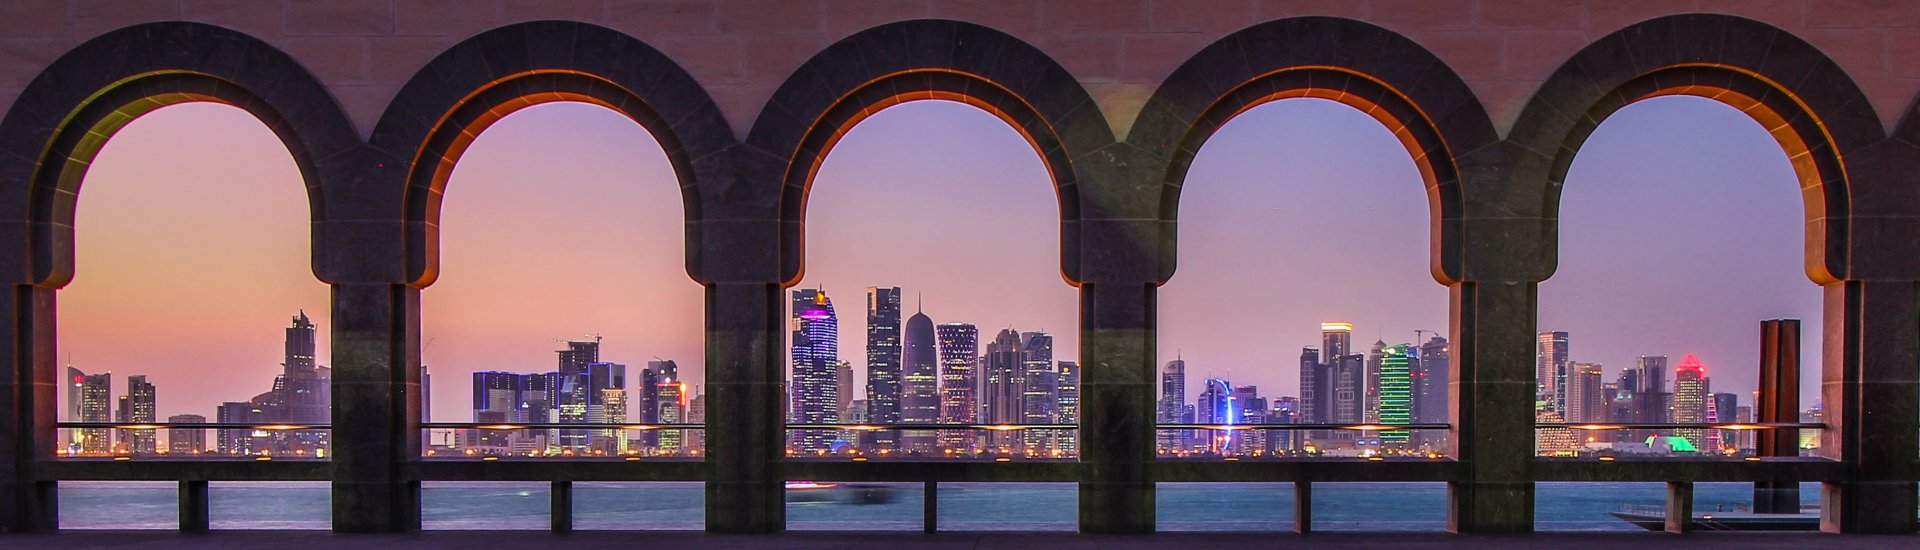 skyline van Doha in Qatar gezien door een galerij van zuilen en bogen.